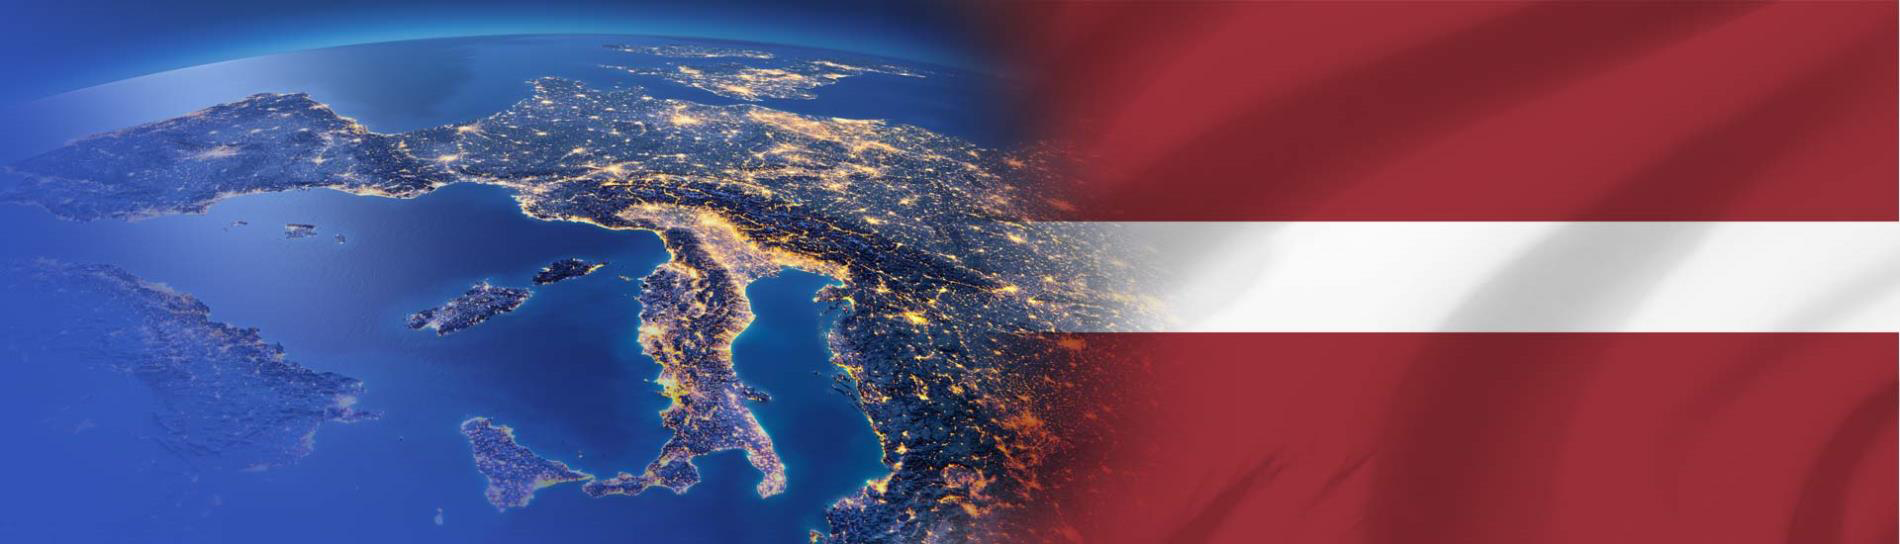 דגל לטביה ביבשת אירופה